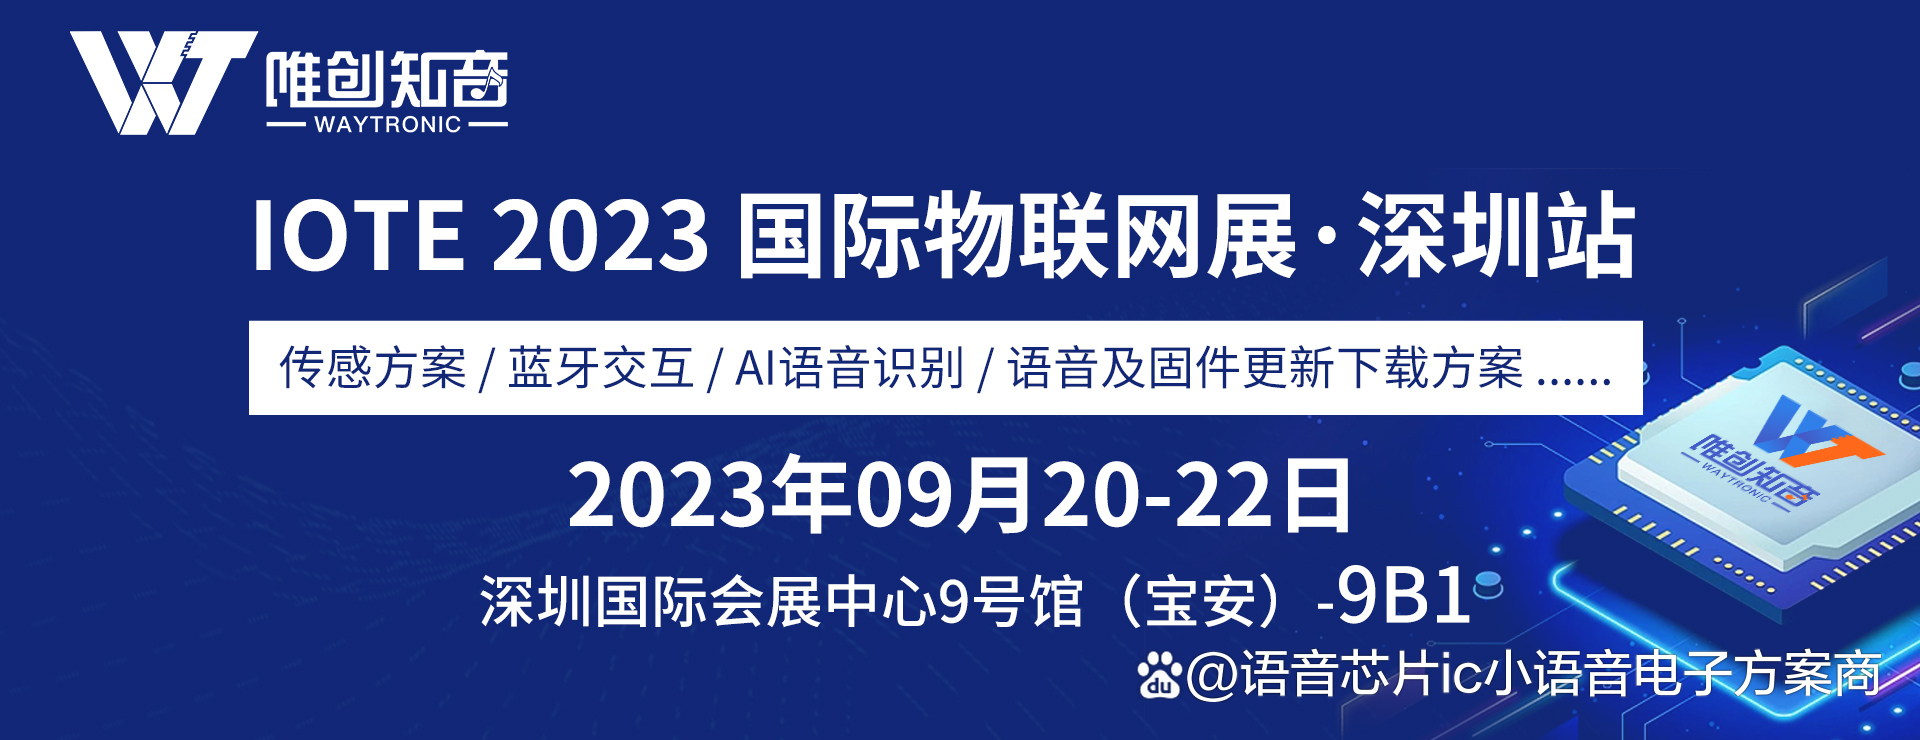 深圳唯創知音電子將參加IOTE 2023第二十屆國際物聯網展?深圳站